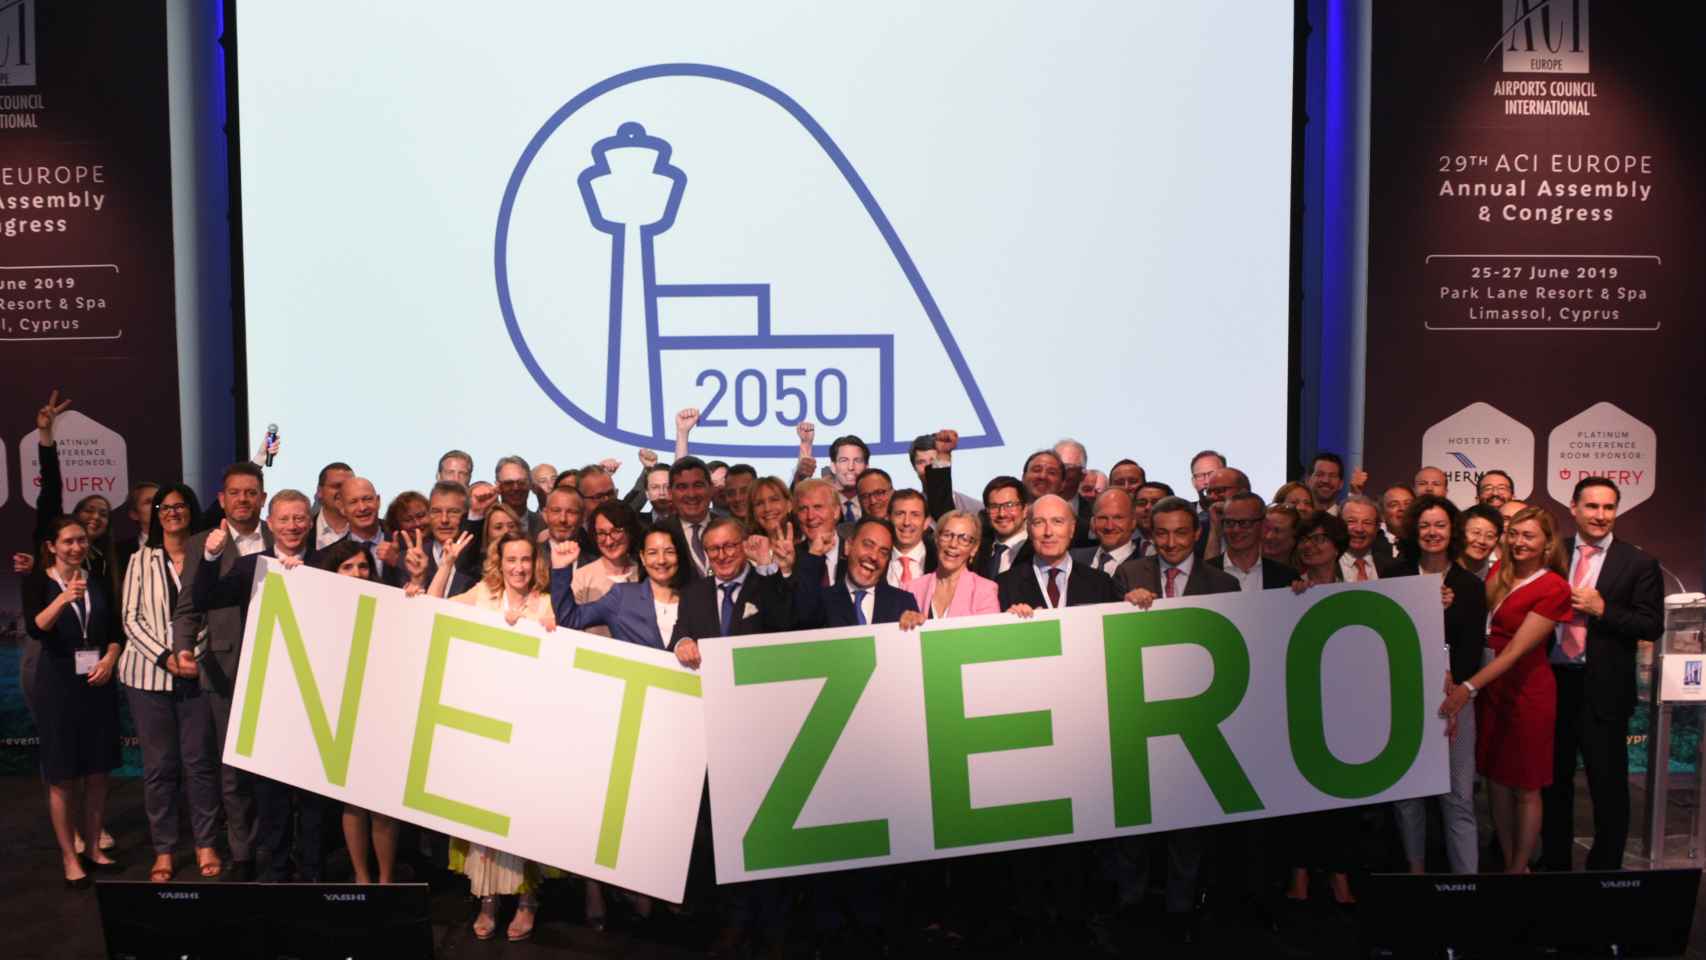 Aena se adhiere al compromiso cero emisiones de carbono en sus aeropuertos para el 2050